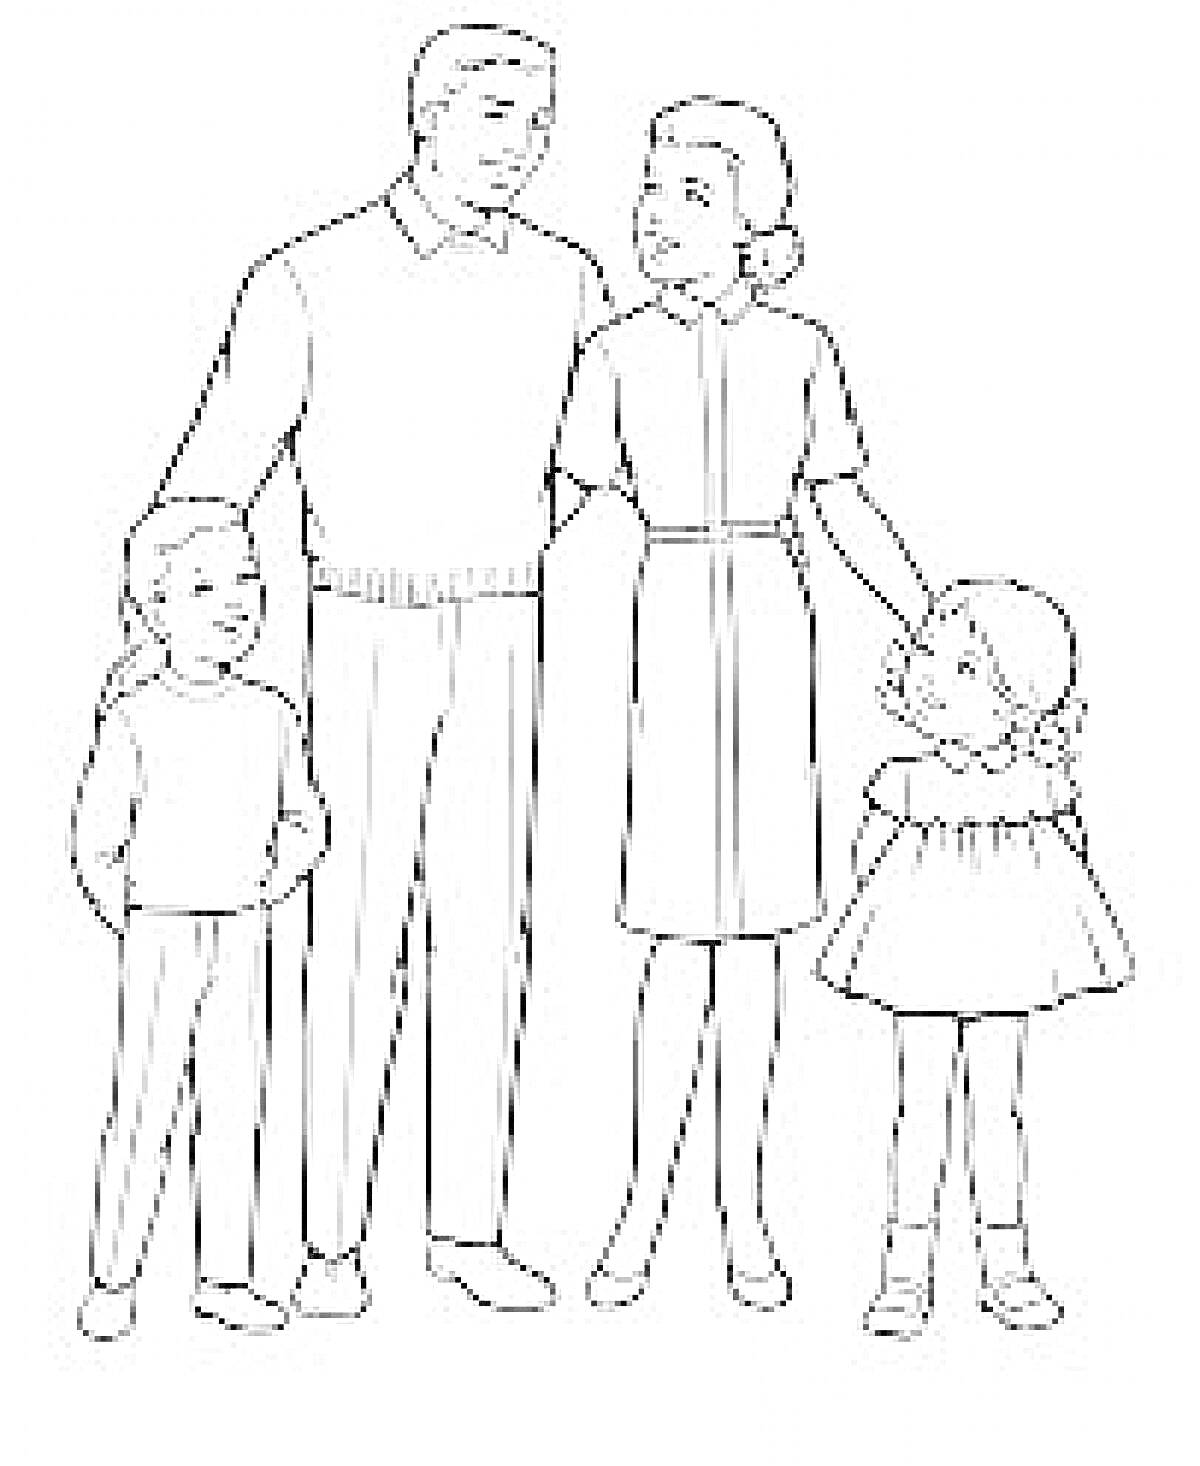 Раскраска Семья с двумя детьми. Взрослый мужчина и взрослая женщина стоят между двумя детьми. Мужчина в свитере и брюках, женщина в платье. Один ребенок в брюках и свитере, другой в платье.